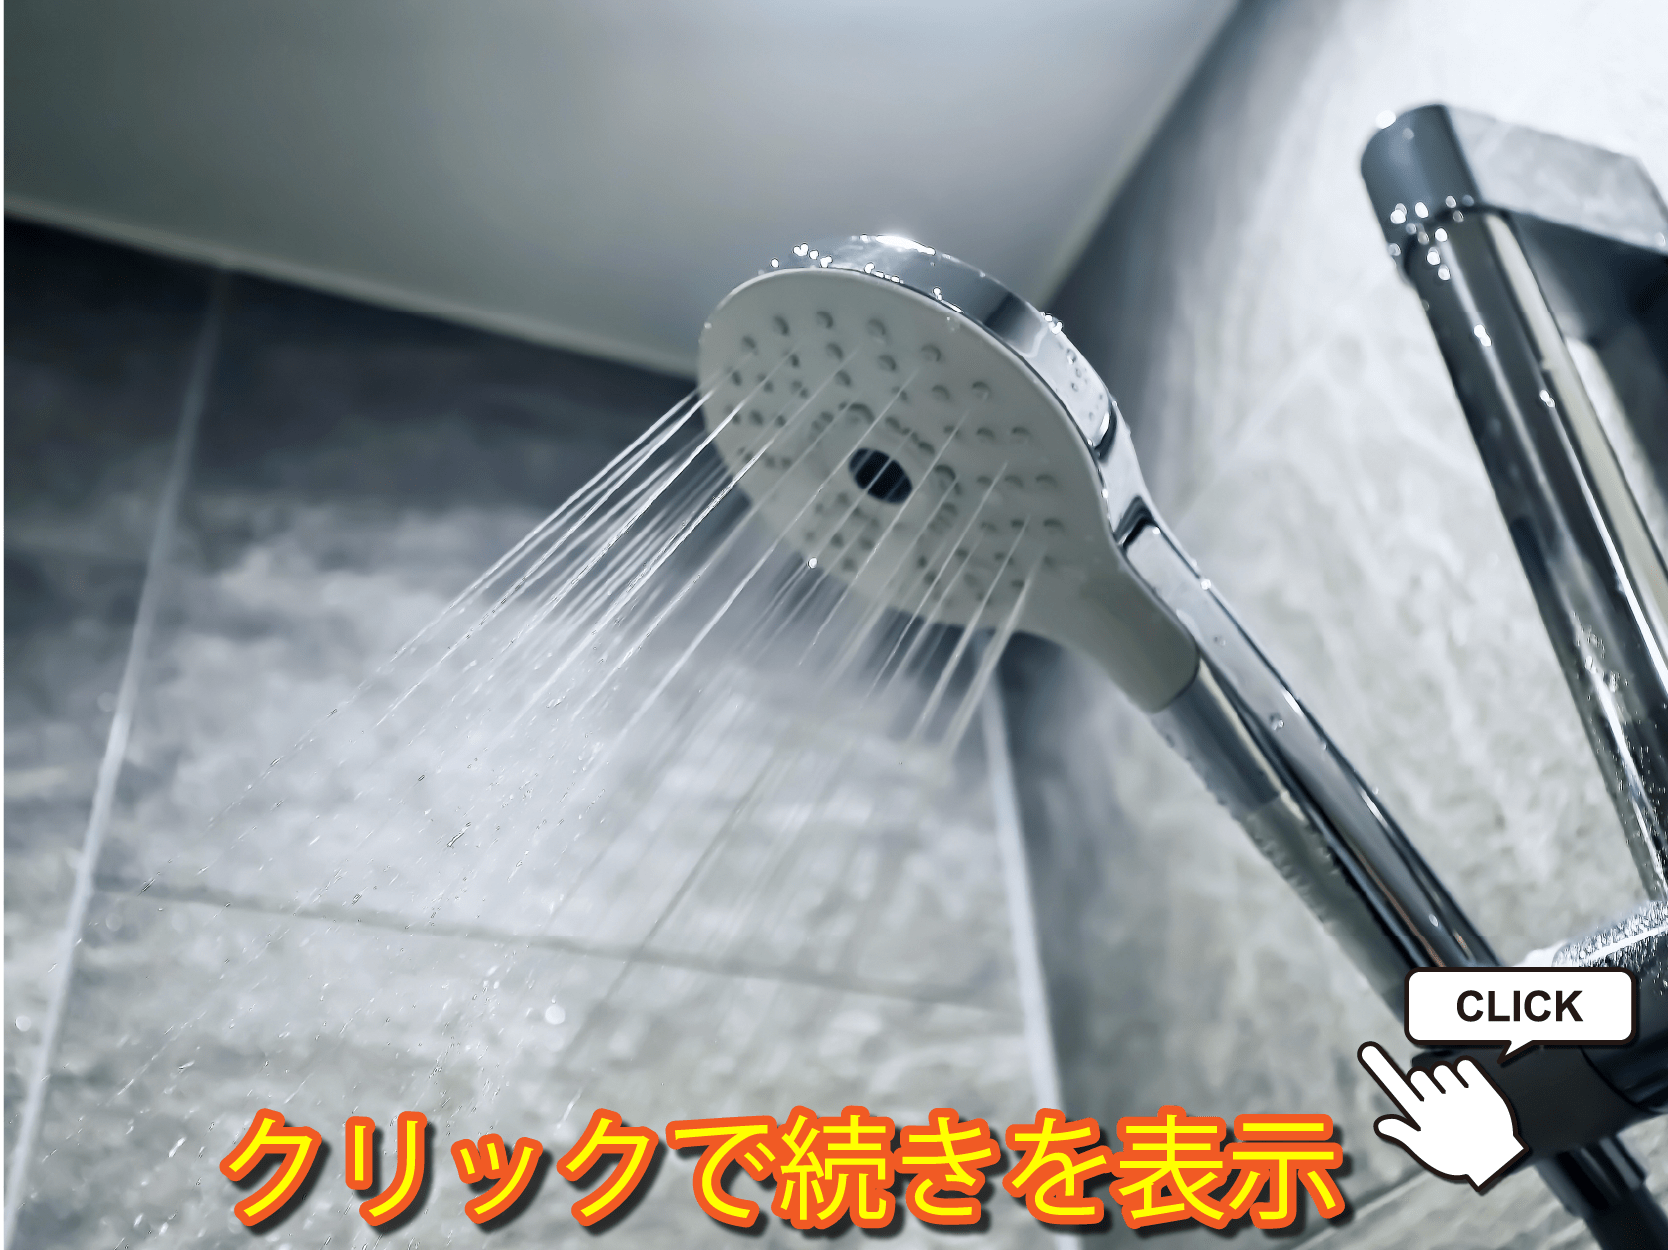 シャワーしか浴びれない場合の疲労回復方法